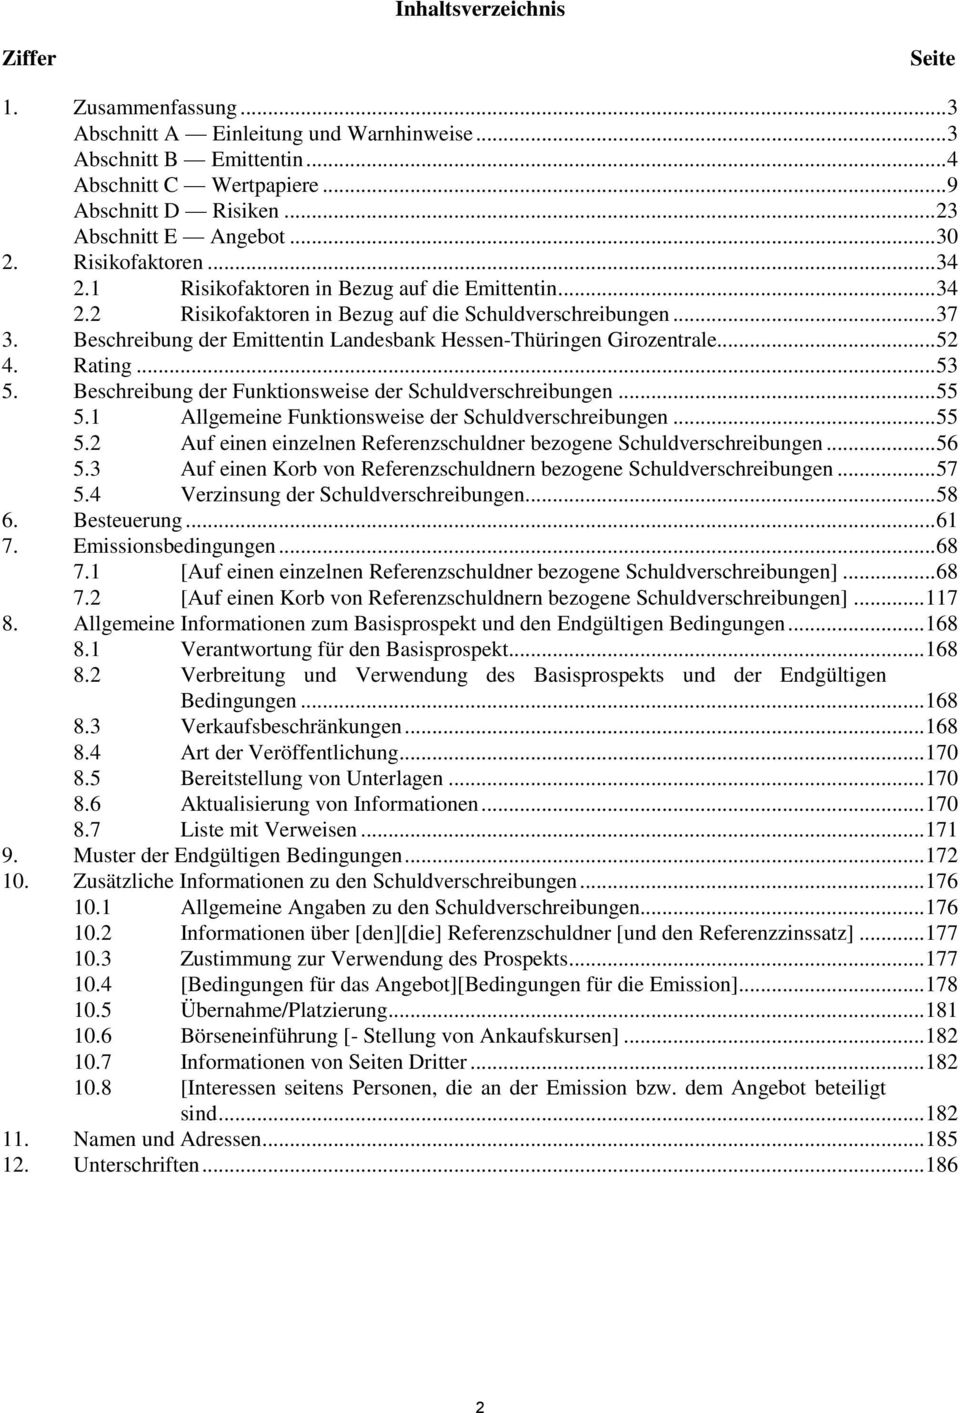 Beschreibung der Emittentin Landesbank Hessen-Thüringen Girozentrale... 52 4. Rating... 53 5. Beschreibung der Funktionsweise der Schuldverschreibungen... 55 5.